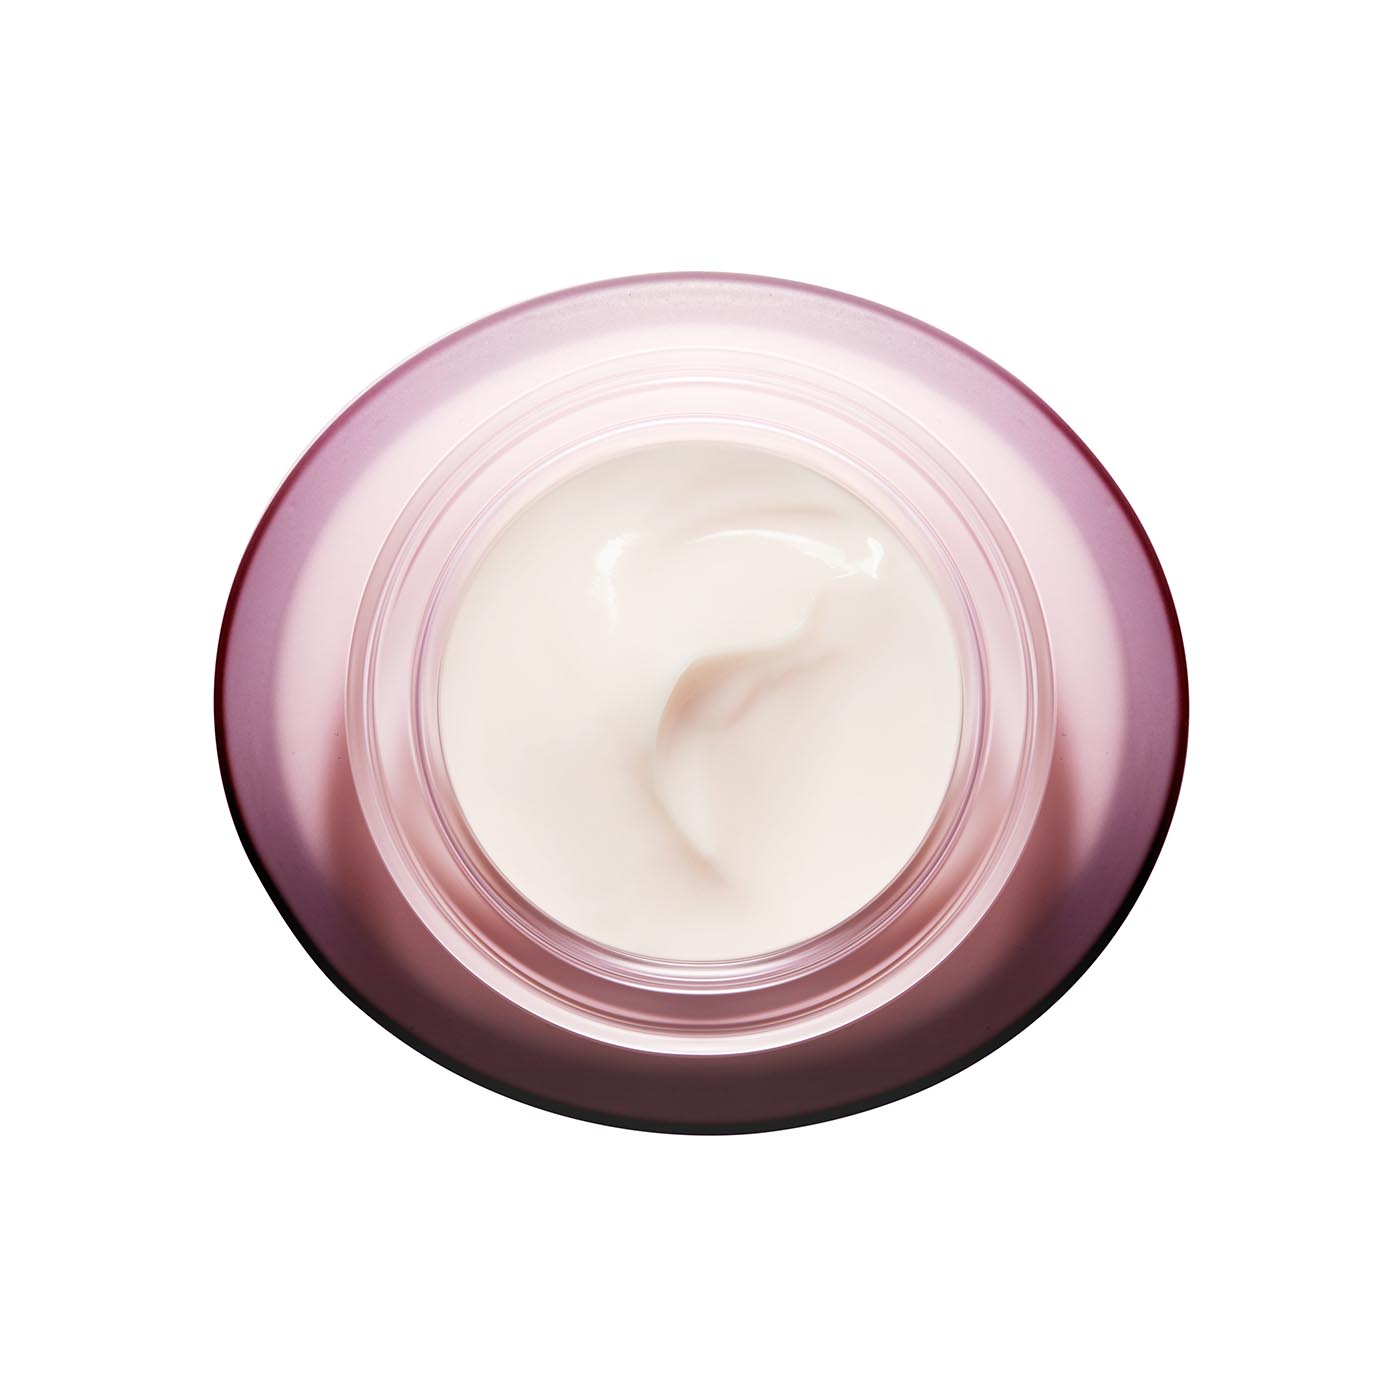 Clarins Crema Multi-Activa Día PS  para pieles secas